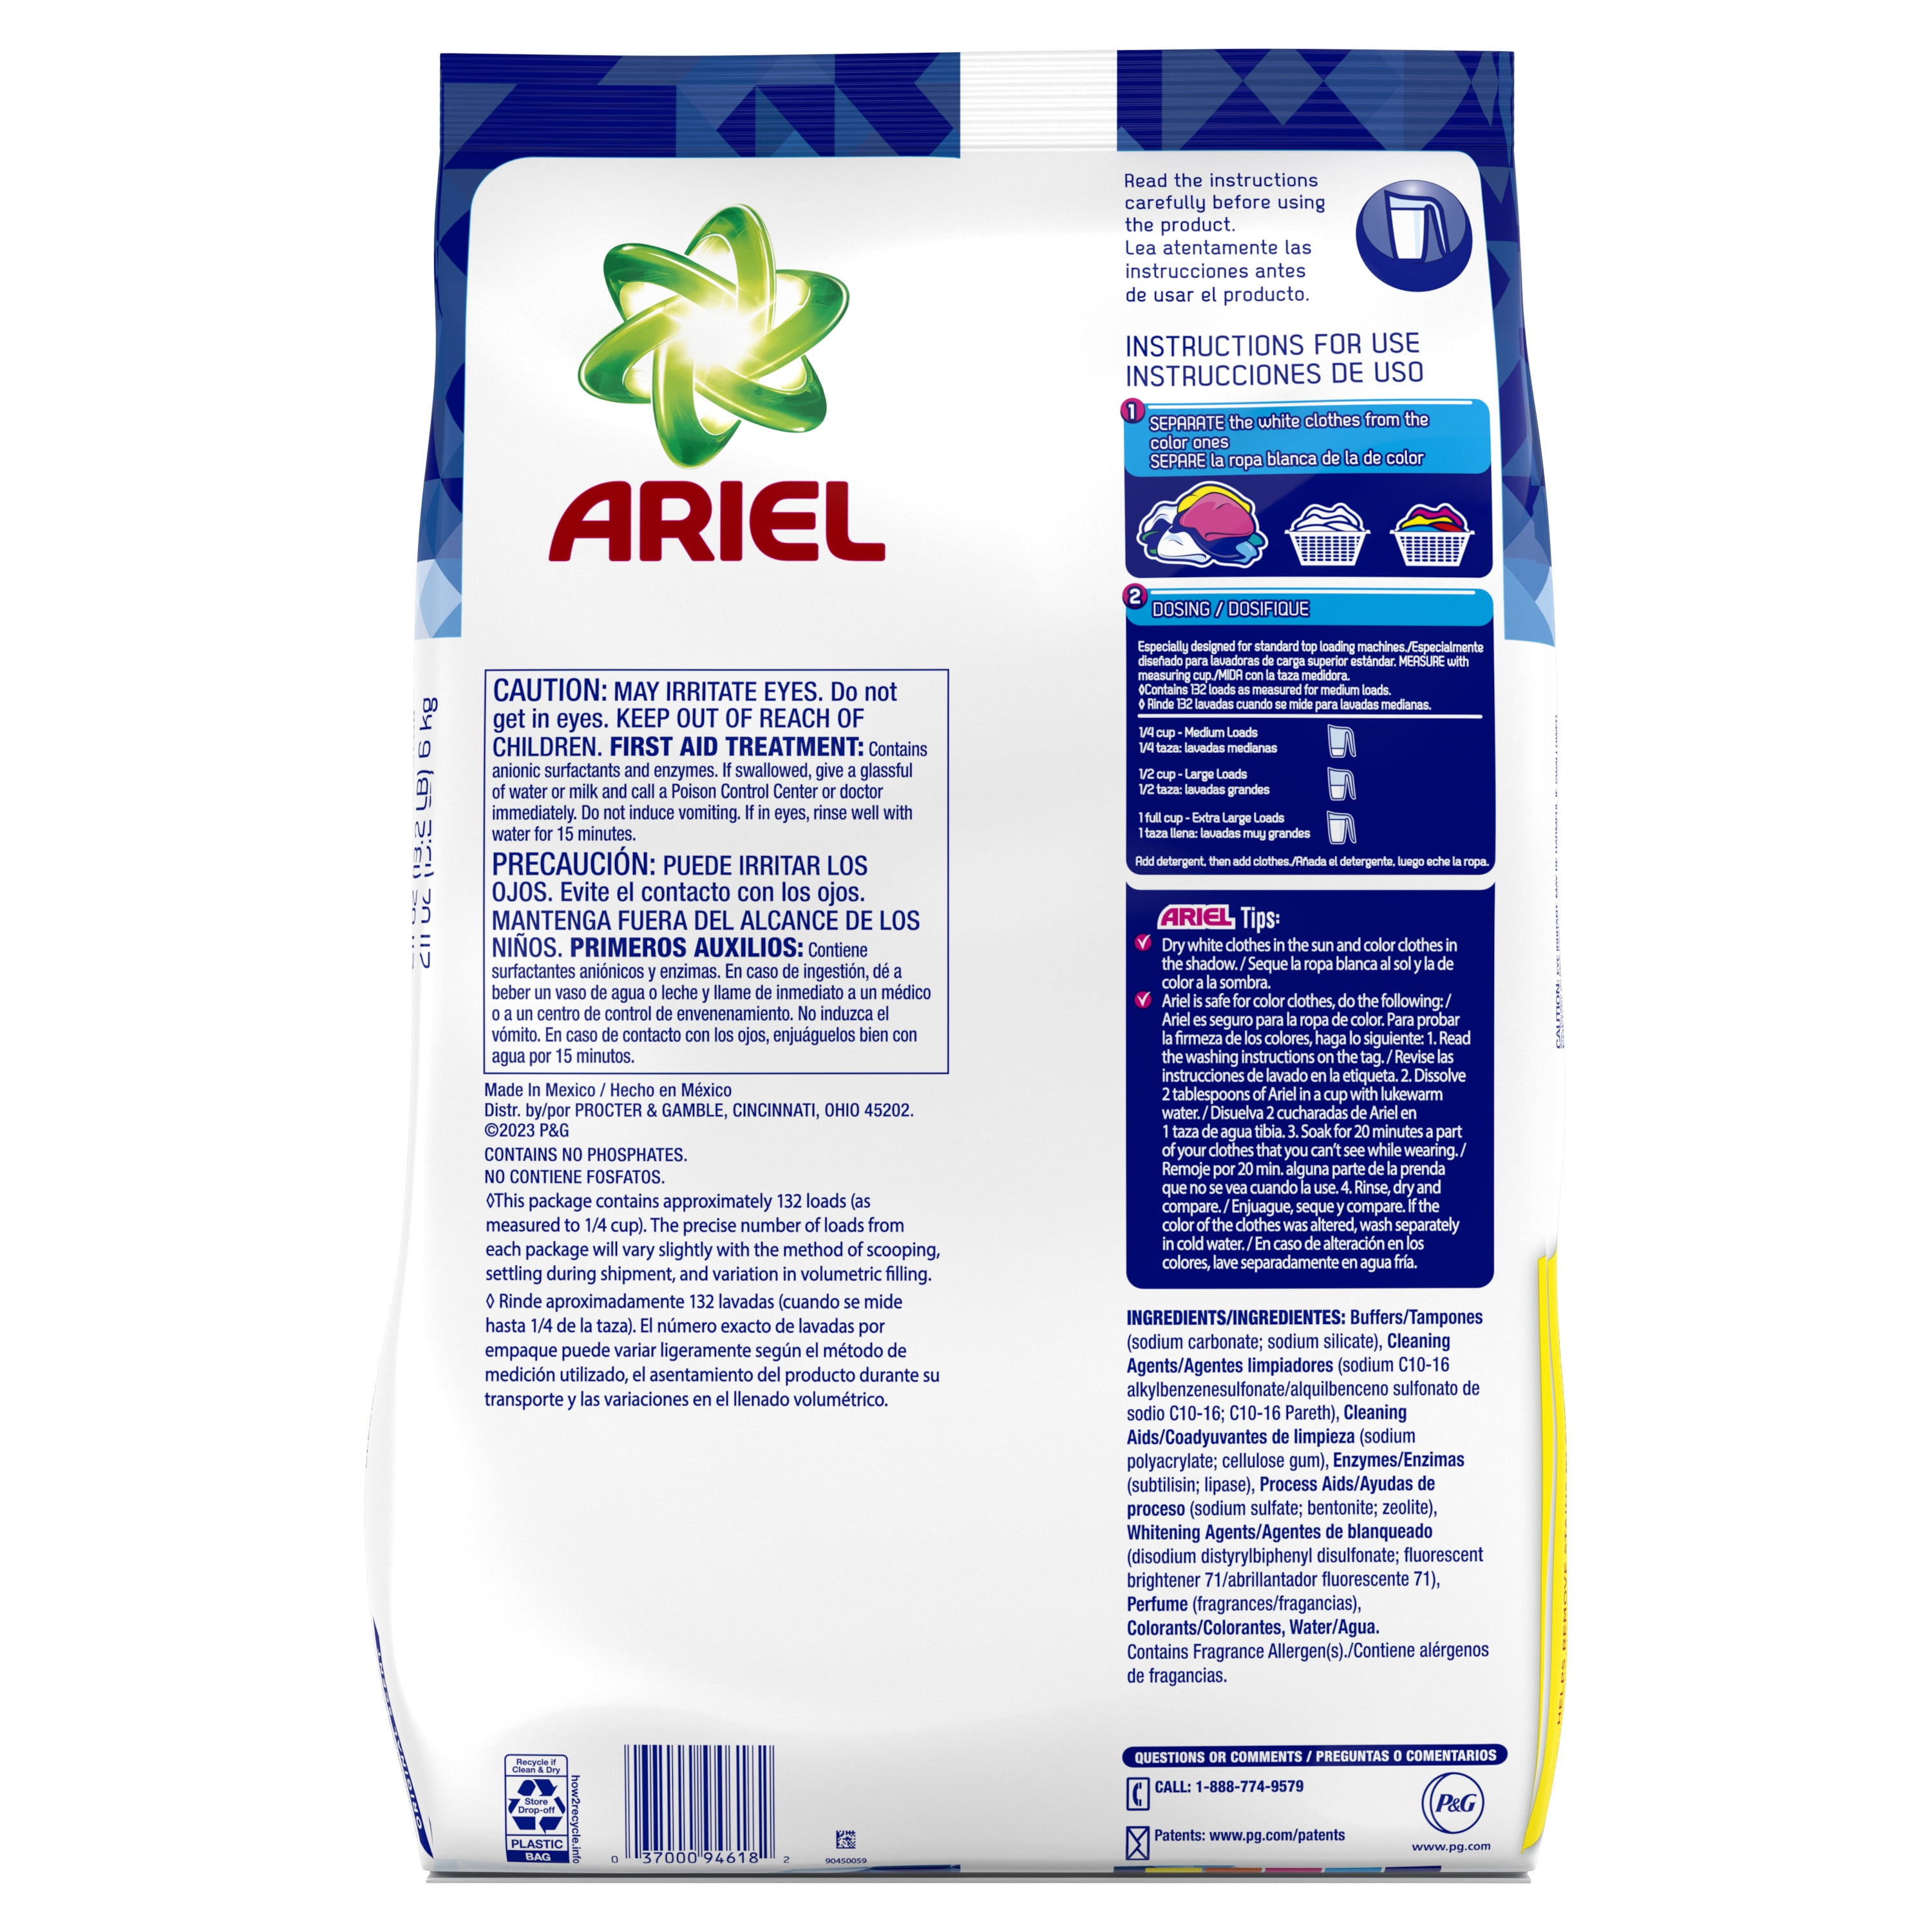 Ariel Detergente en polvo para ropa, original, 88 cargas, 141 onzas